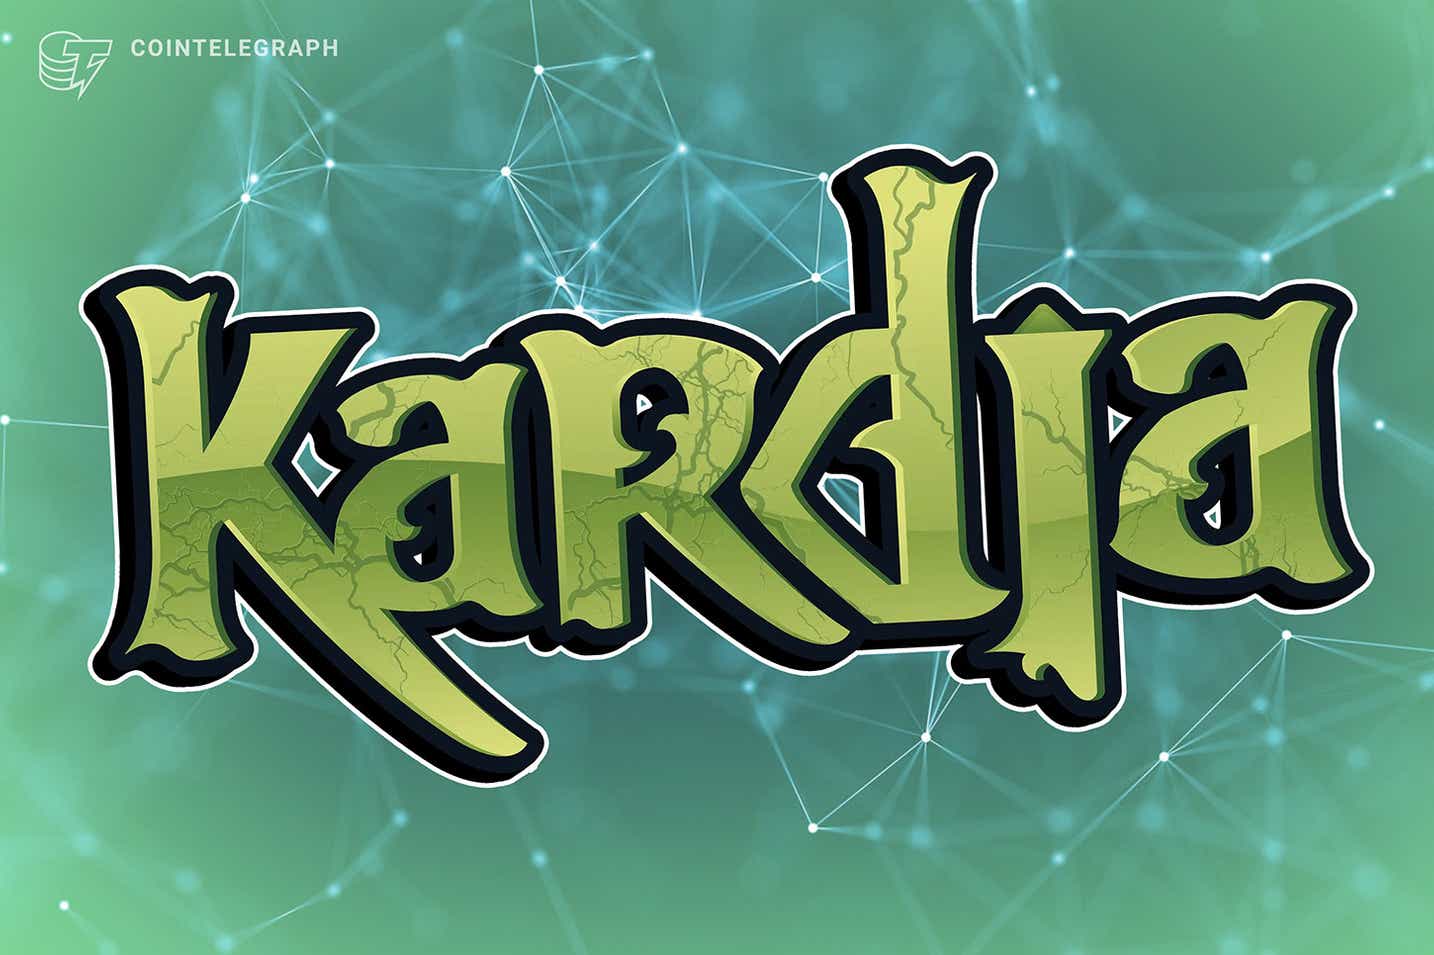 Kardia, nền tảng chơi game kiếm tiền đột phá công bố bán trước NFT